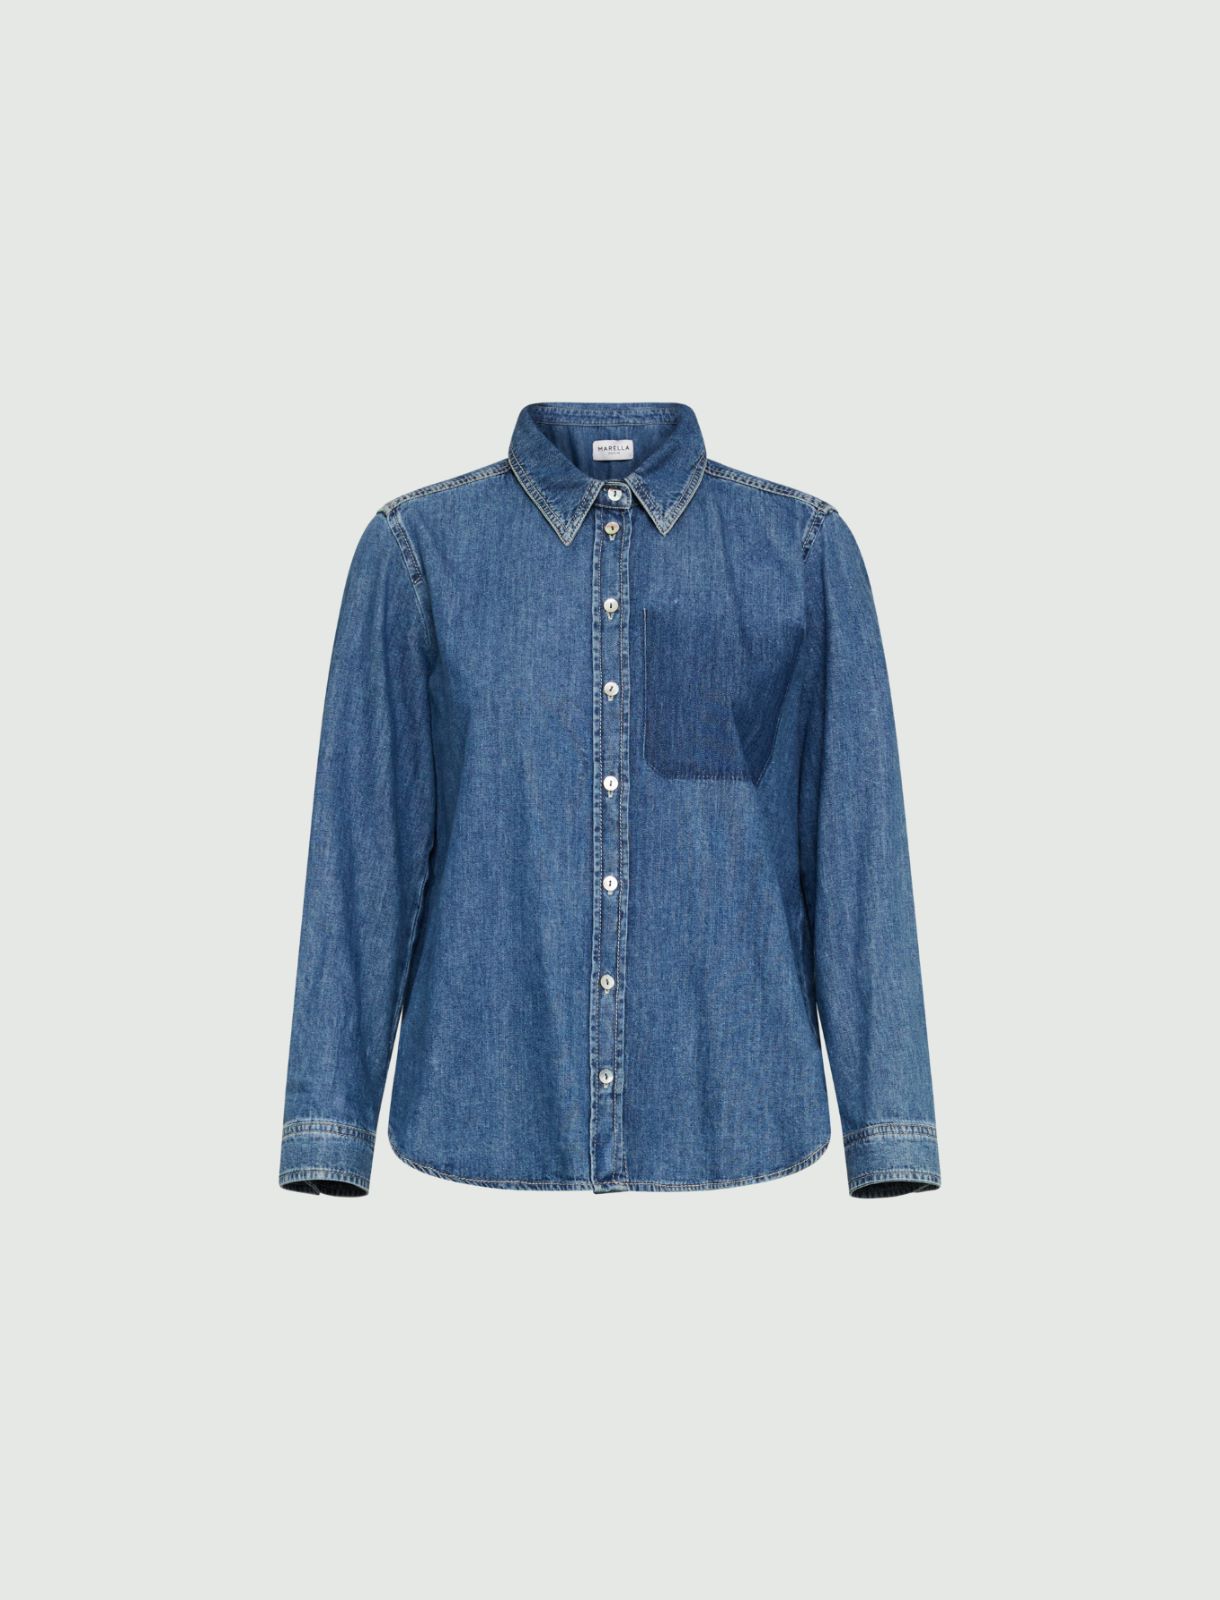 Denim shirt - Blue jeans - Marina Rinaldi